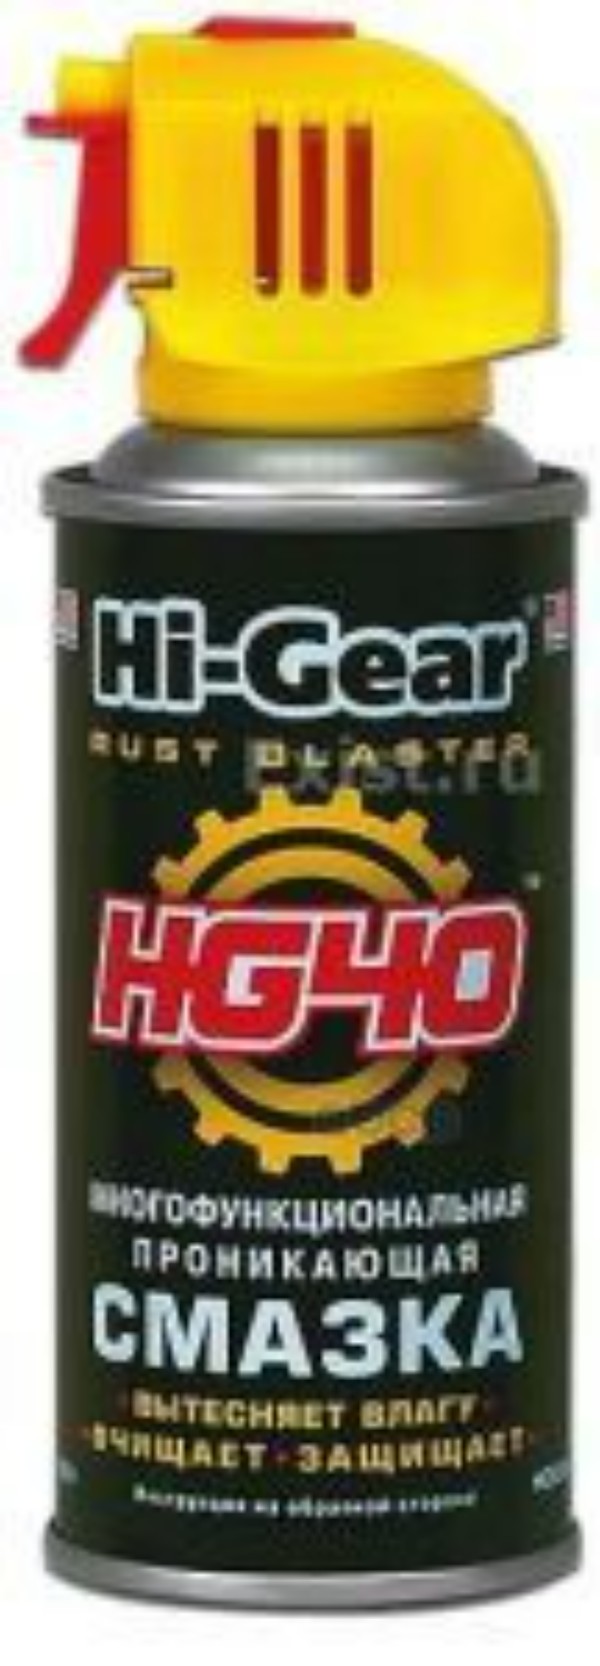 Многофункциональная Проникающая Смазка Hg40 Rust Blaster, Аэрозоль 140г Hi-Gear арт. hg550